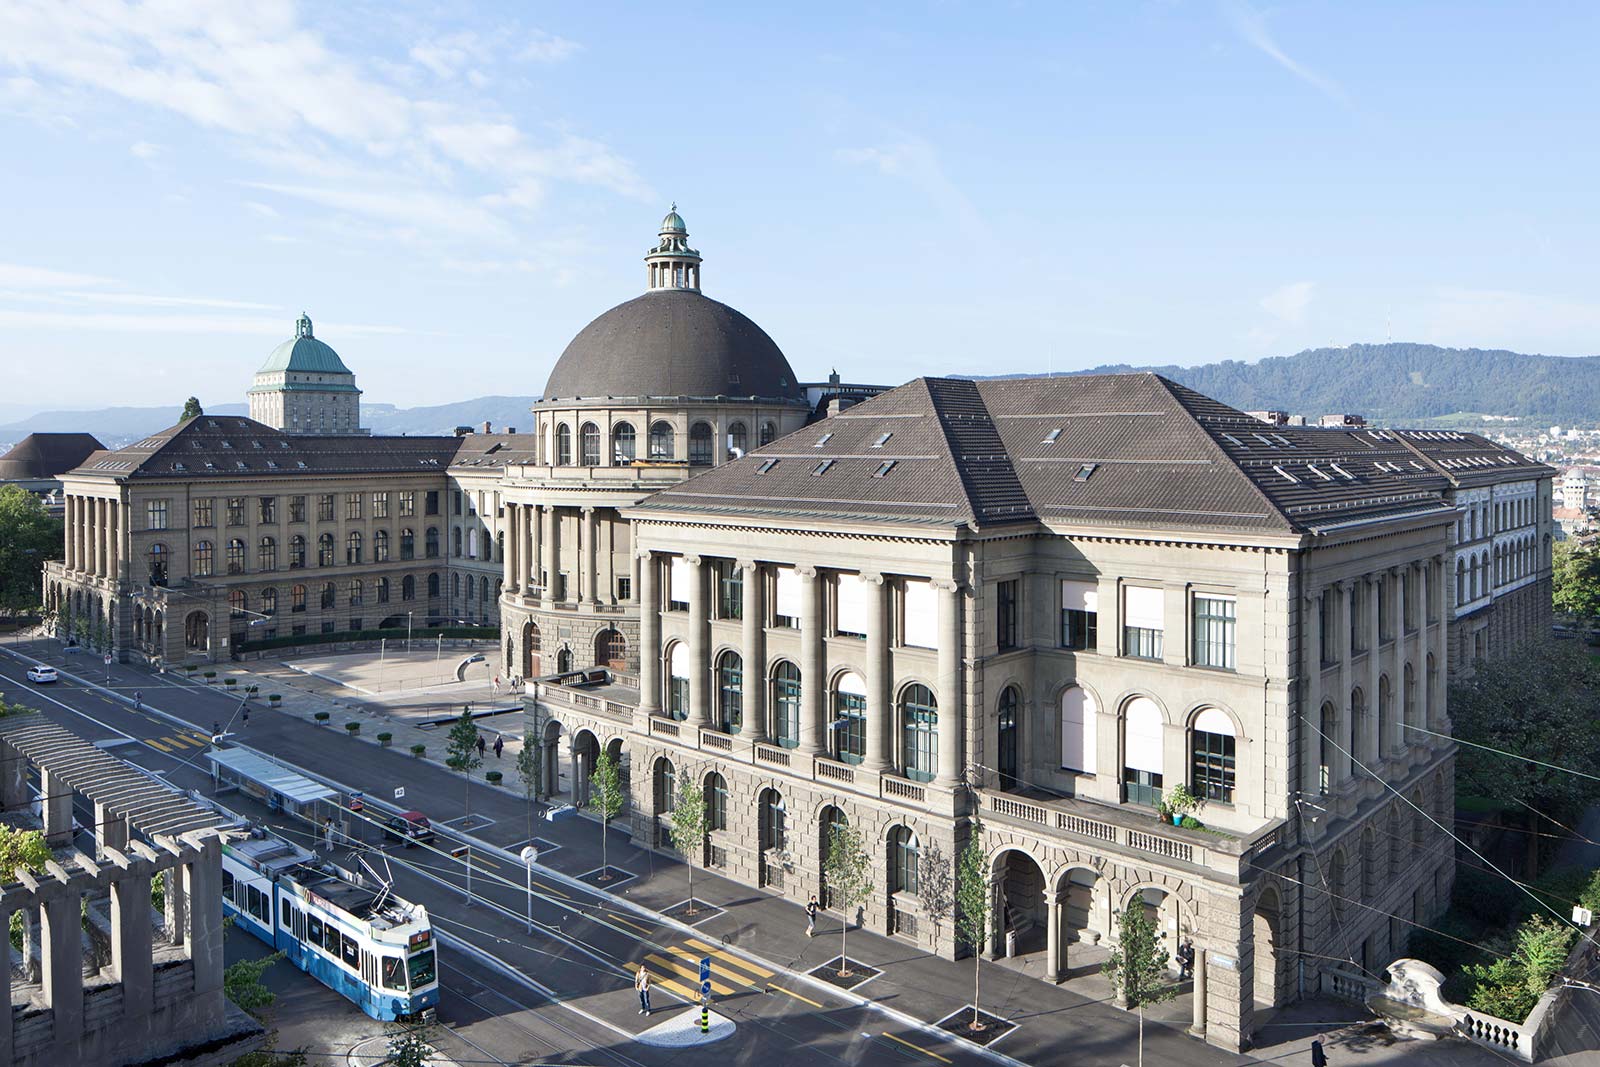 ETH Zurich main building